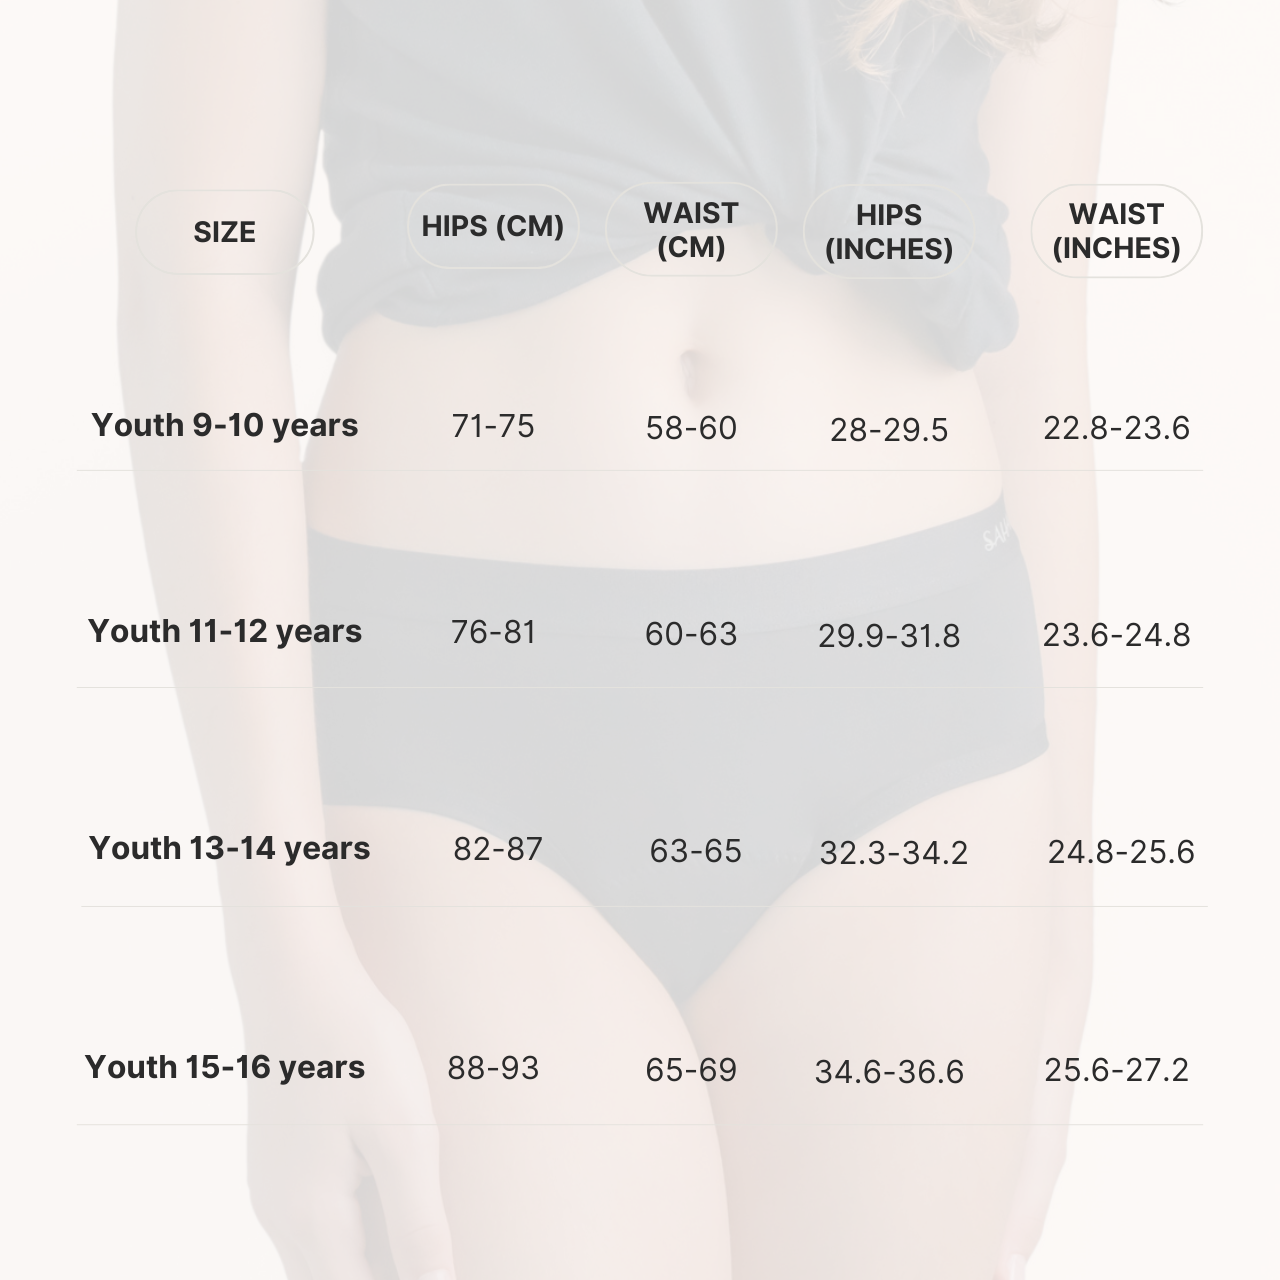 ملابس داخلية مقاومة للدورة الشهرية من صحارى للمراهقين، قدرة متوسطة على الامتصاص - للأعمار من 13 إلى 14 عامًا